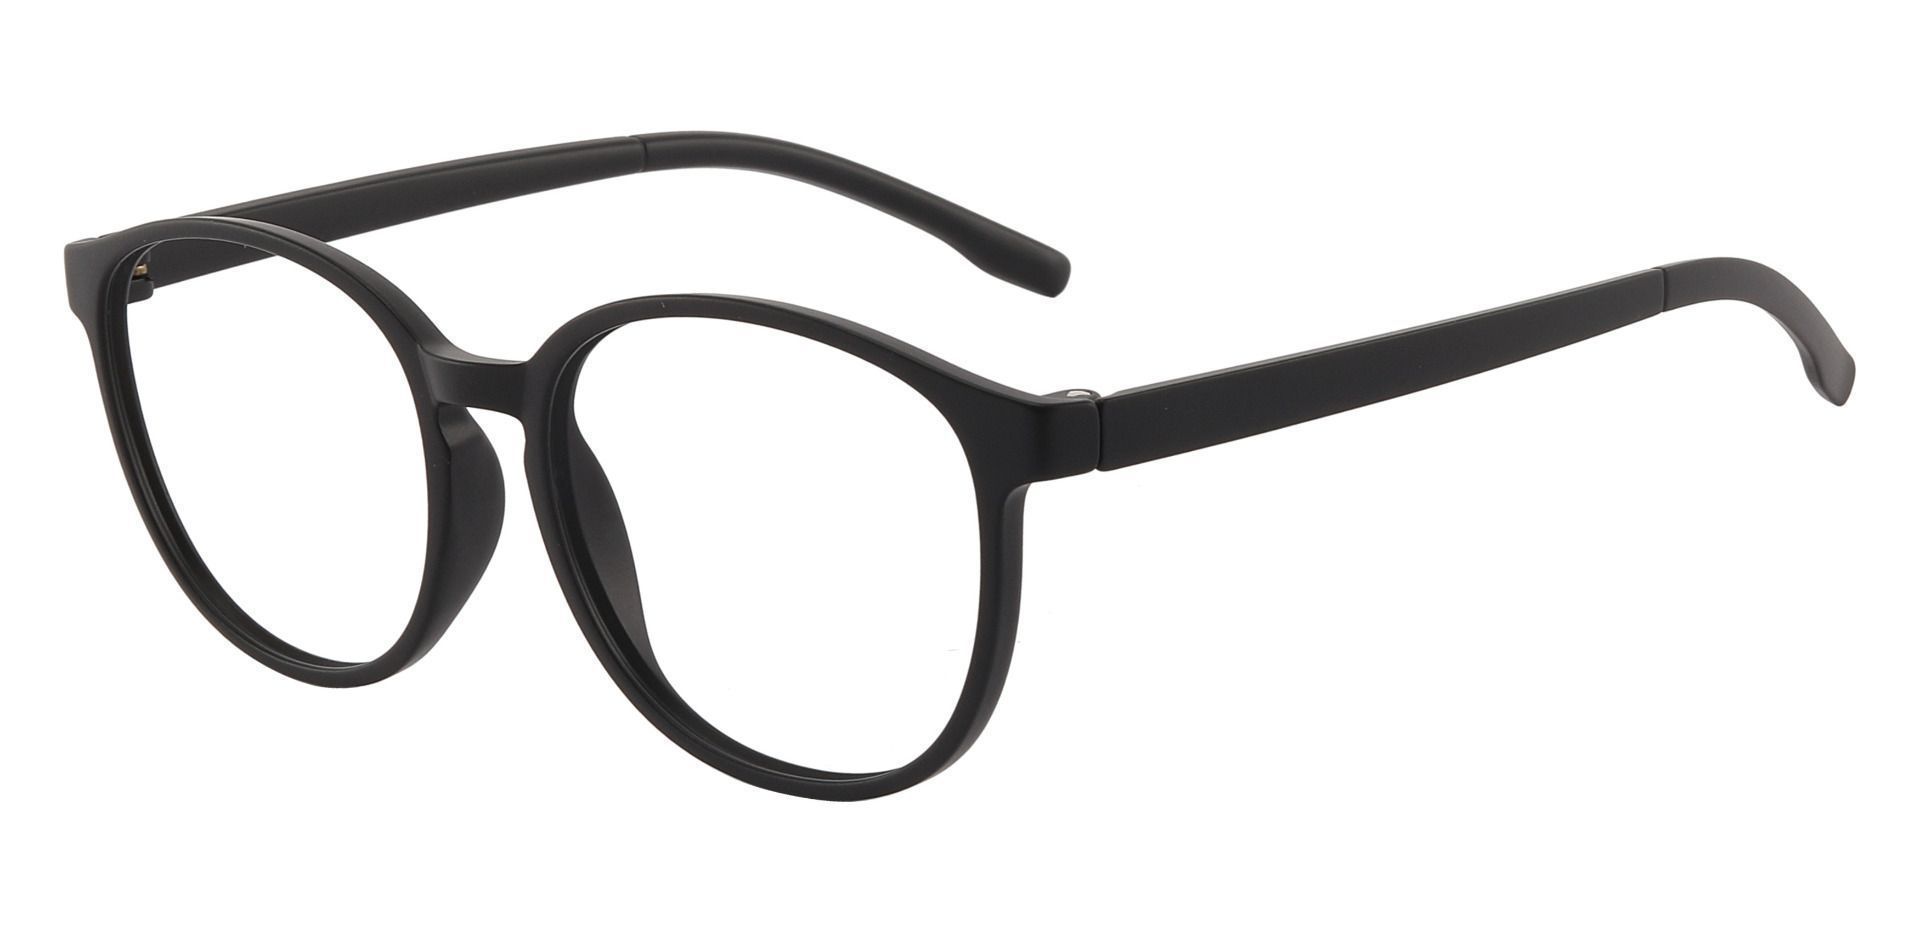 Molasses Oval Non-Rx Glasses - Black